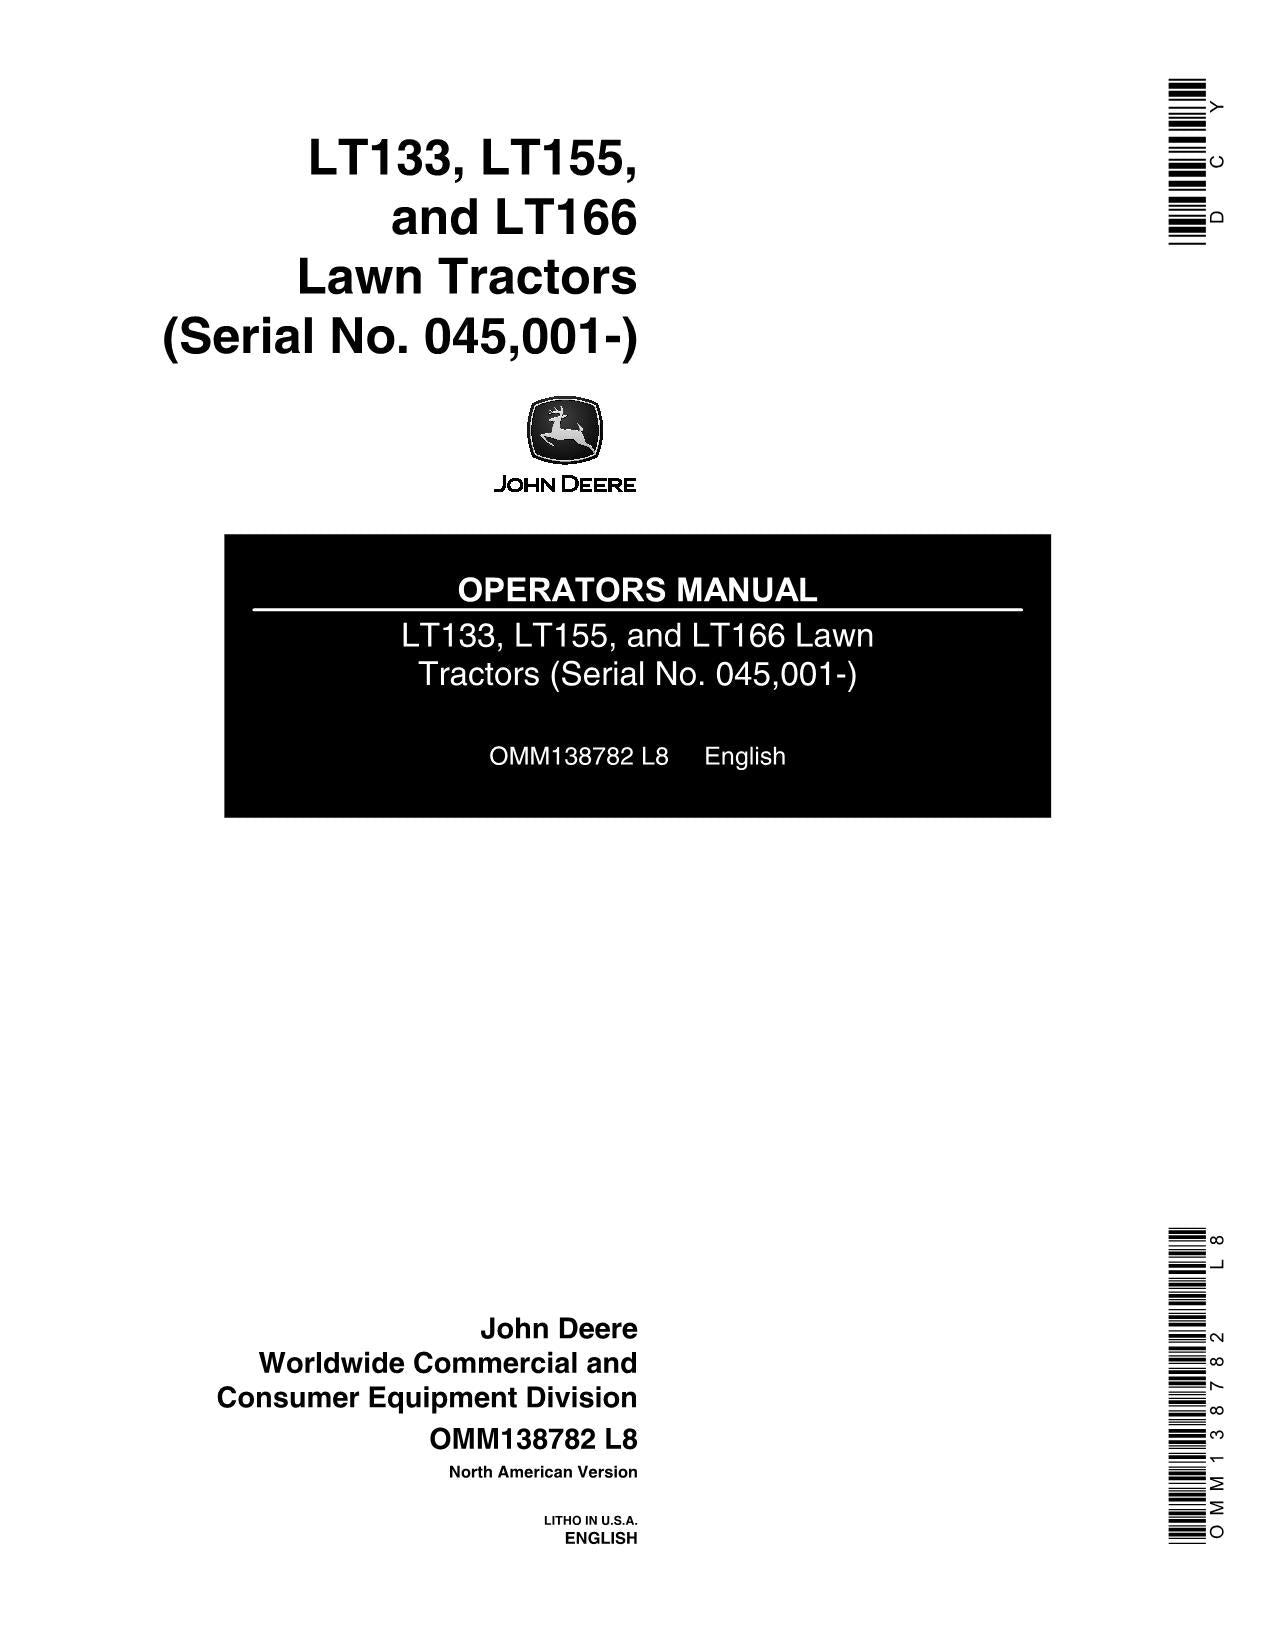 JOHN DEERE LT133 LT155 LT166 TRACTOR OPERATORS MANUAL 045001-085000